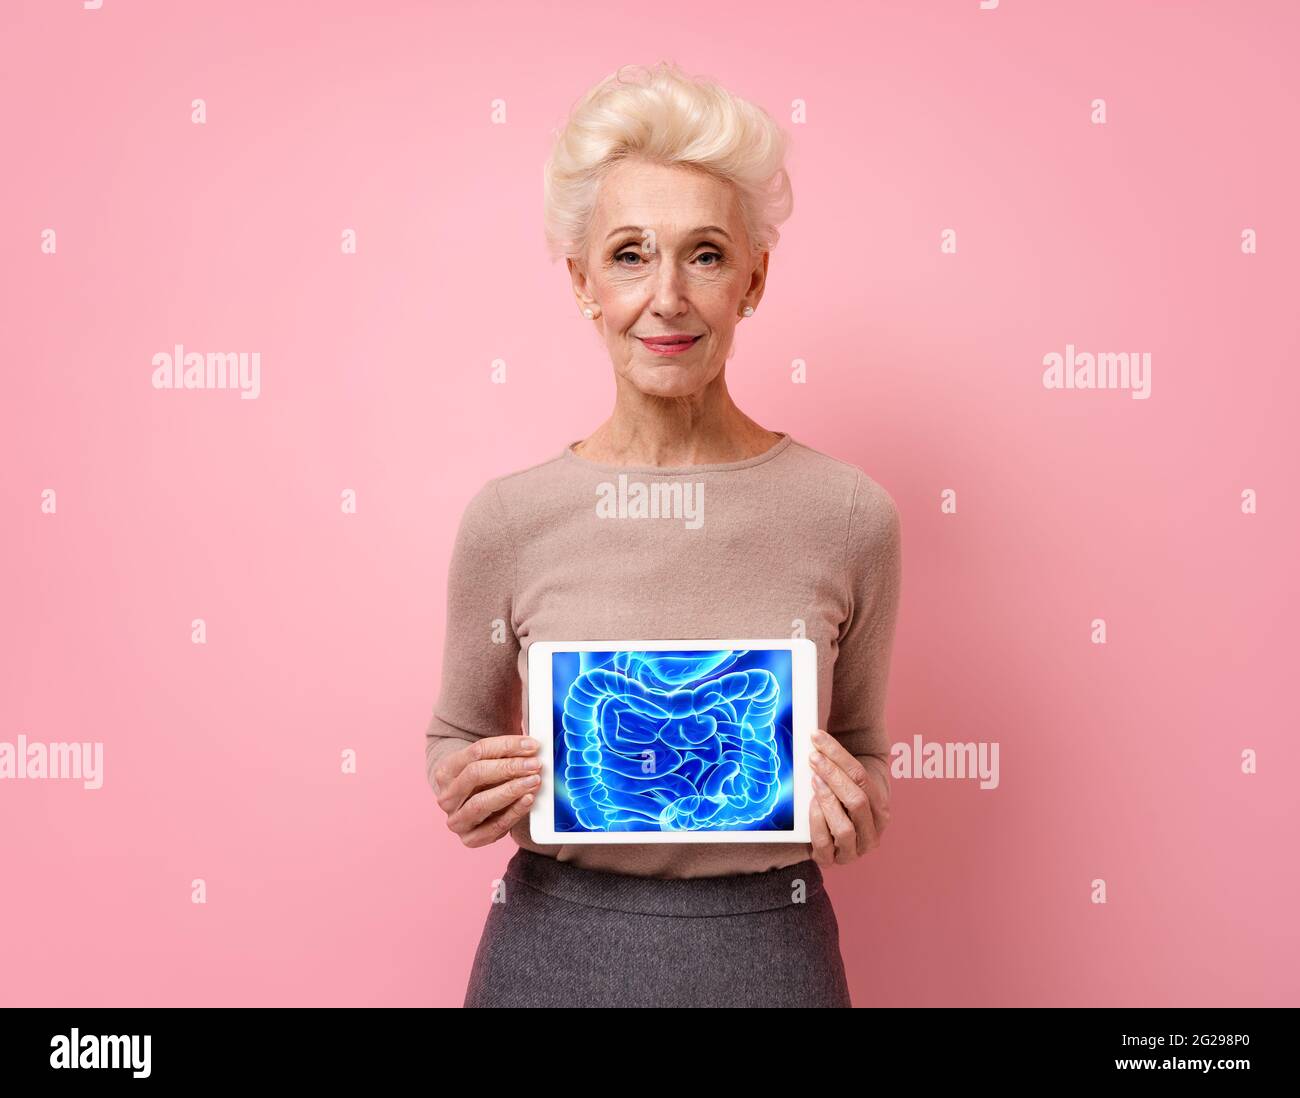 Femme attrayante montre l'image de la radiographie des intestins. Photo d'une femme âgée souriante avec une tablette dans les mains sur fond rose. Médical c Banque D'Images